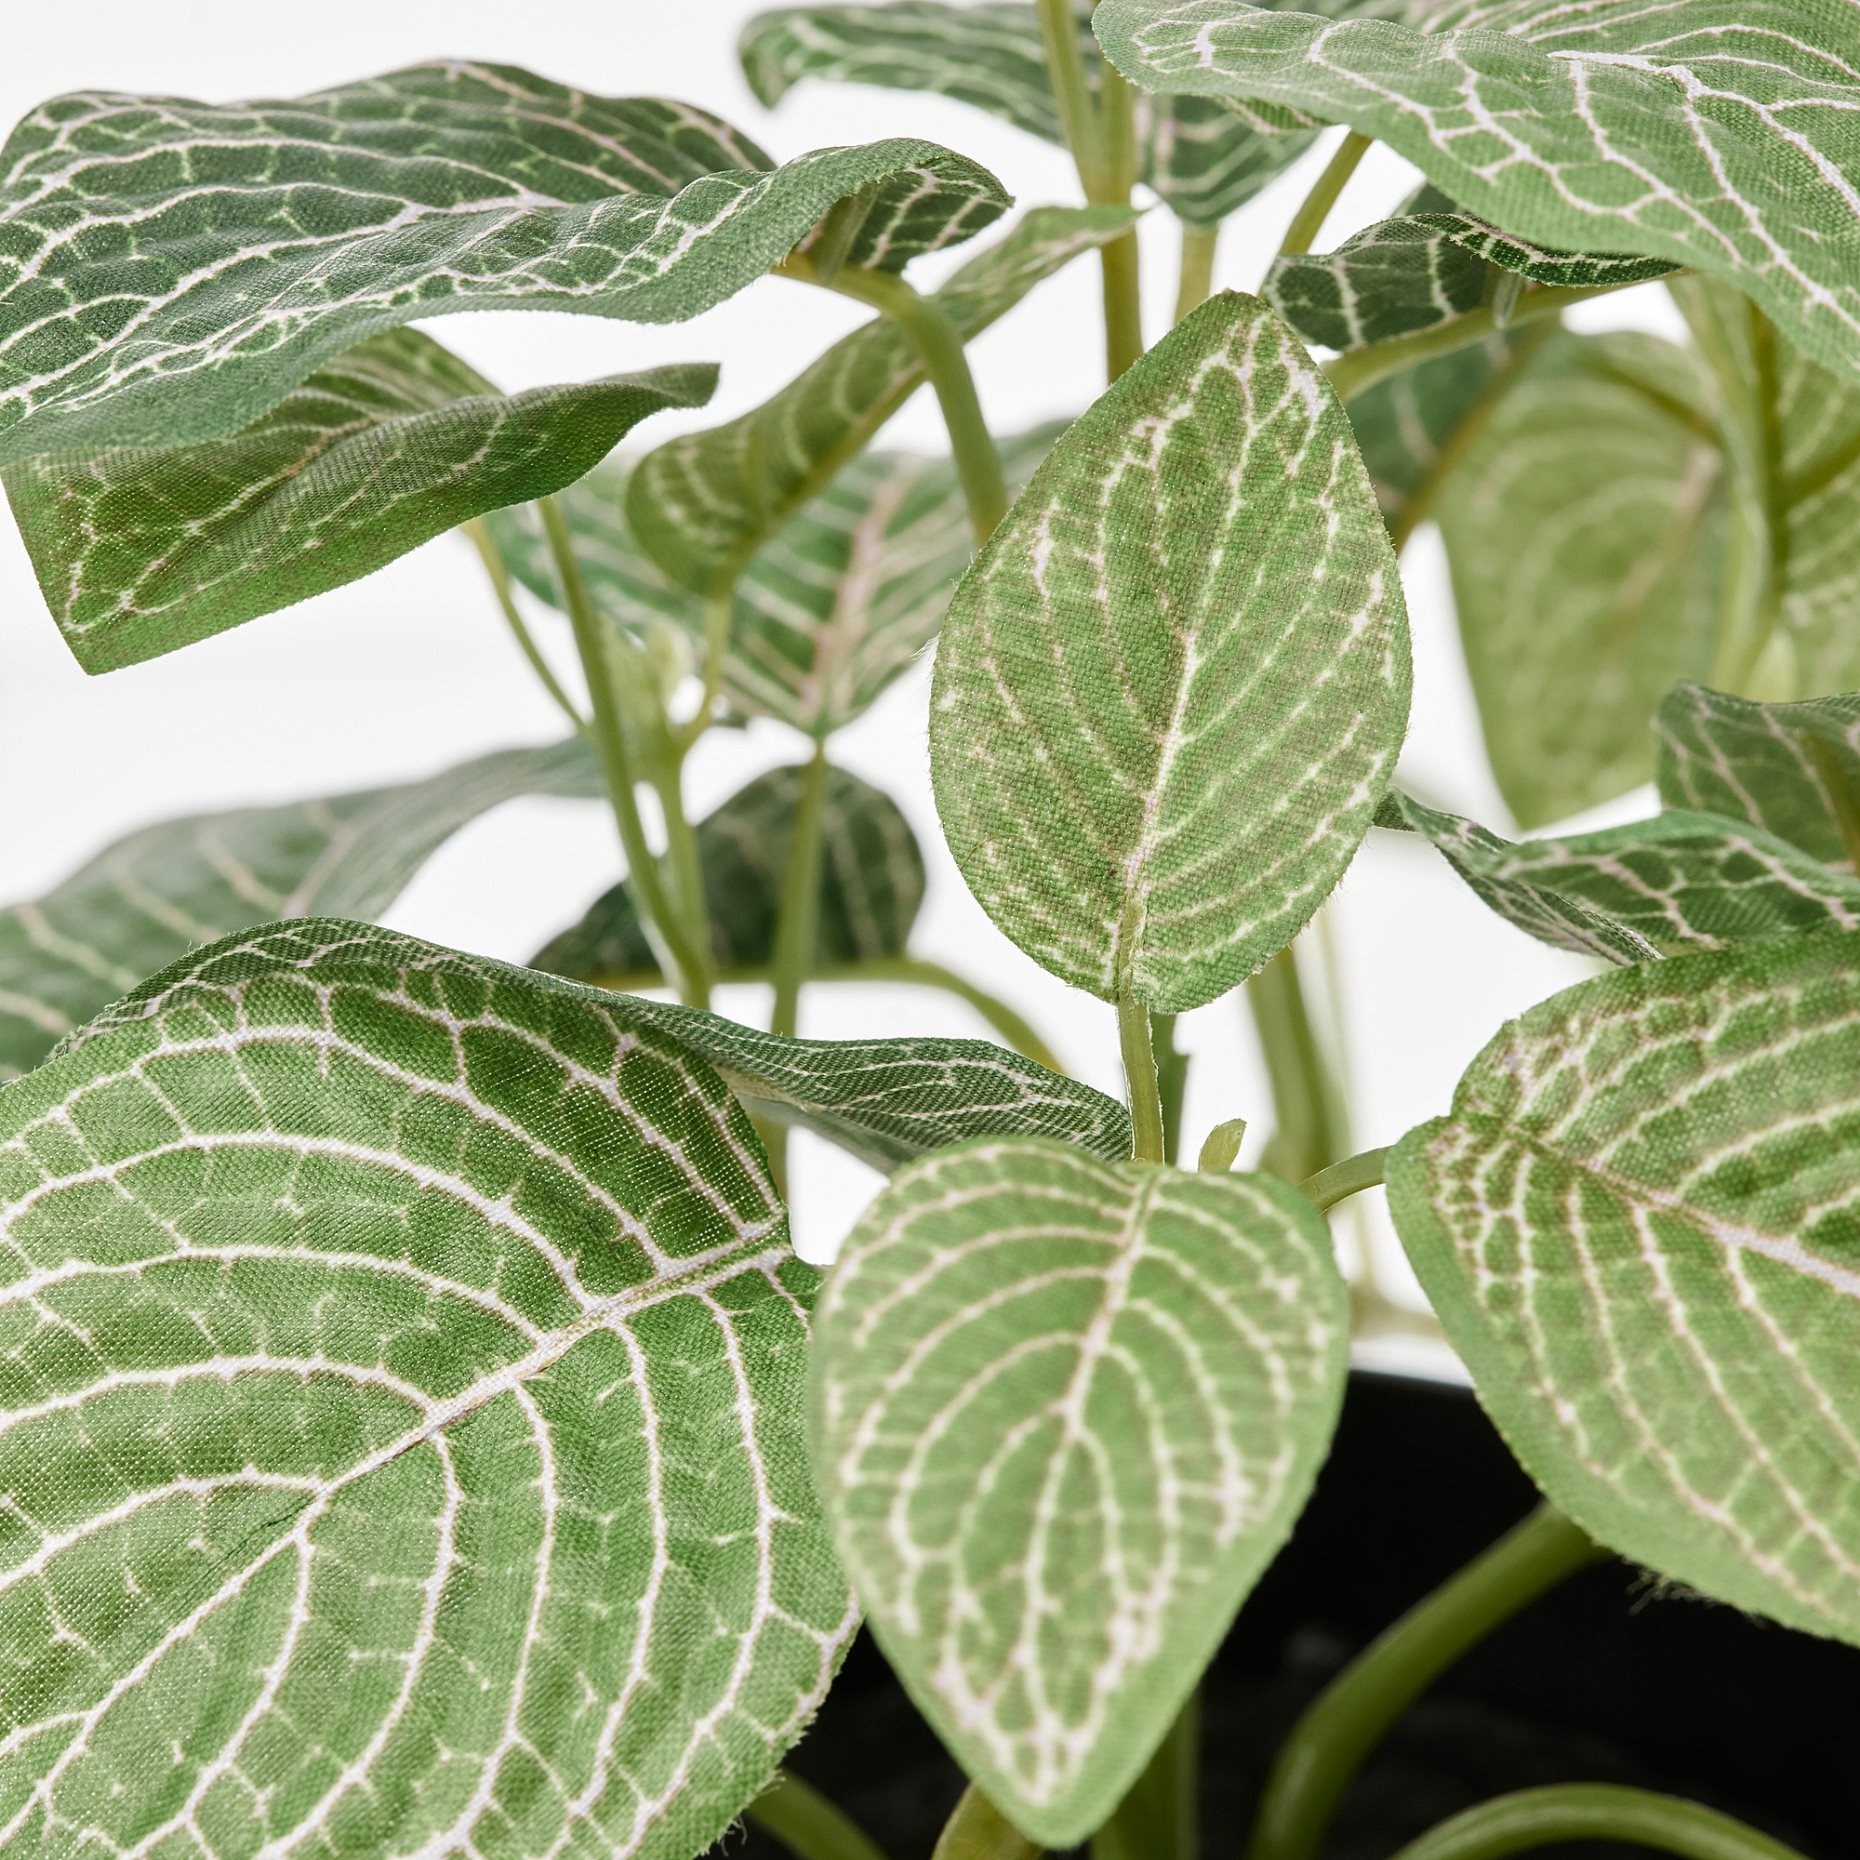 FEJKA, τεχνητό φυτό σε γλάστρα/εσωτερικού/εξωτερικού χώρου/Φιτόνια/κρεμαστό, 9 cm, 405.716.77